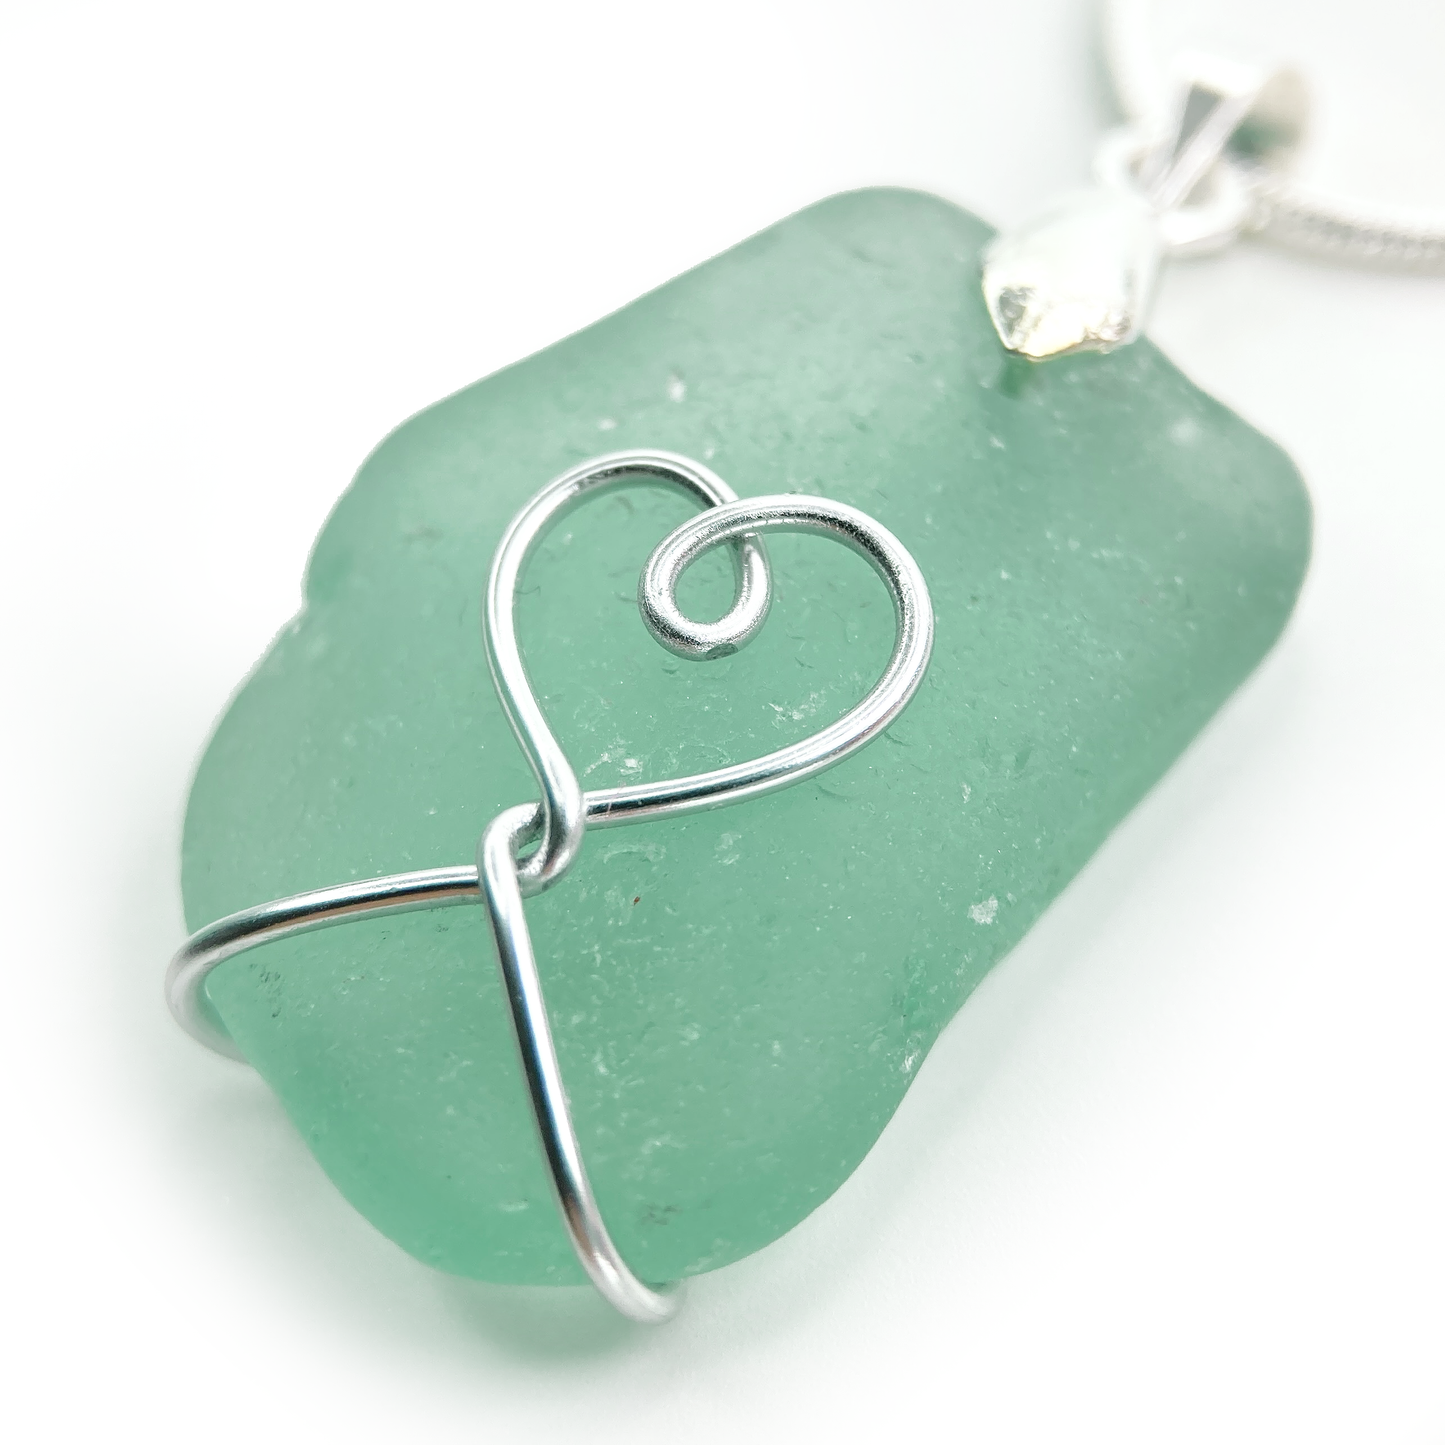 Sea Glass Pendant - Aqua Green Heart Wire Wrapped Necklace - Scottish Silver Jewellery